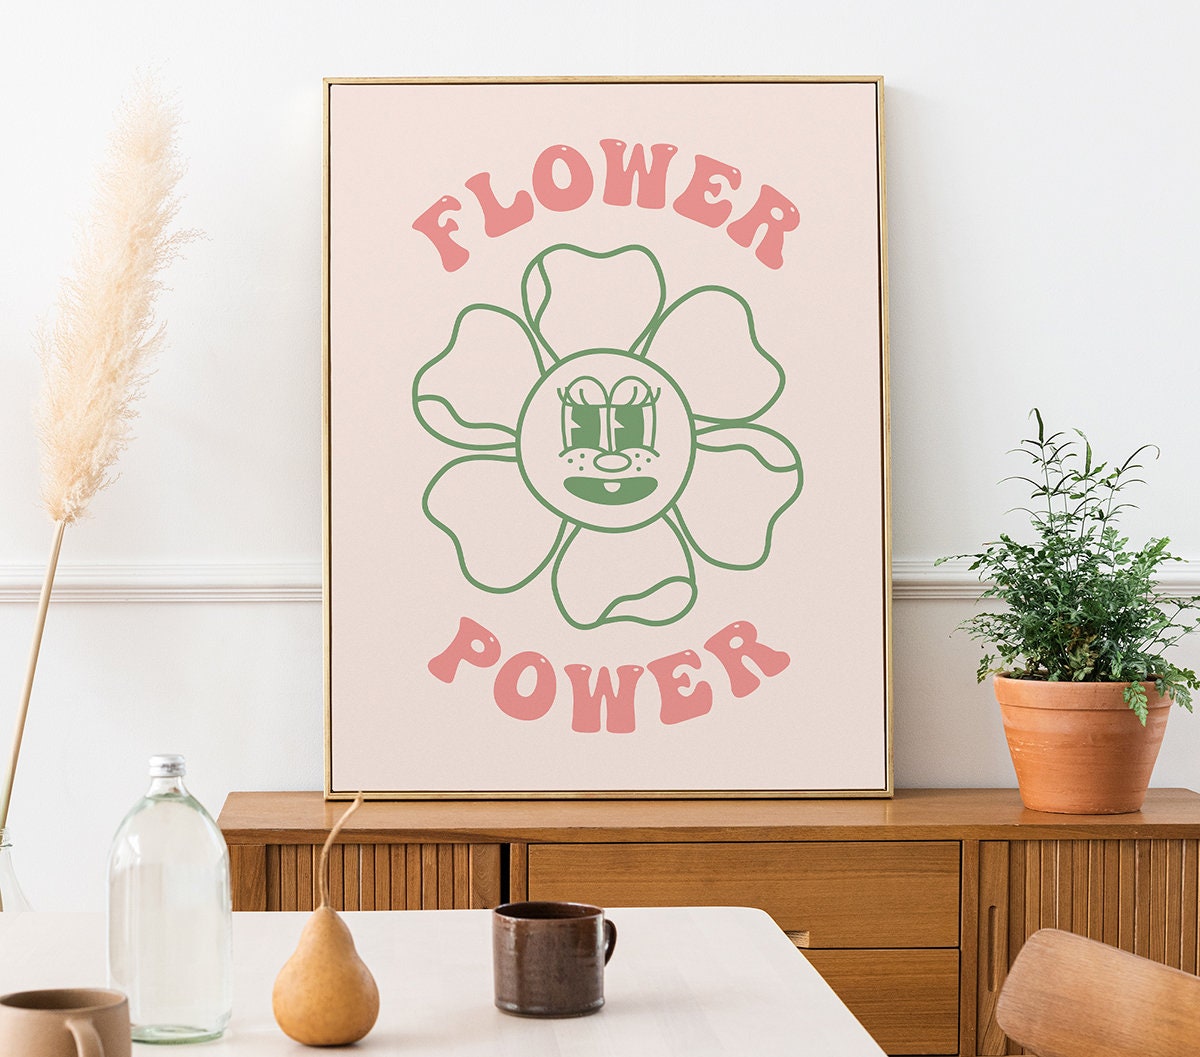 Flower Power Retro Poster - shopartivo